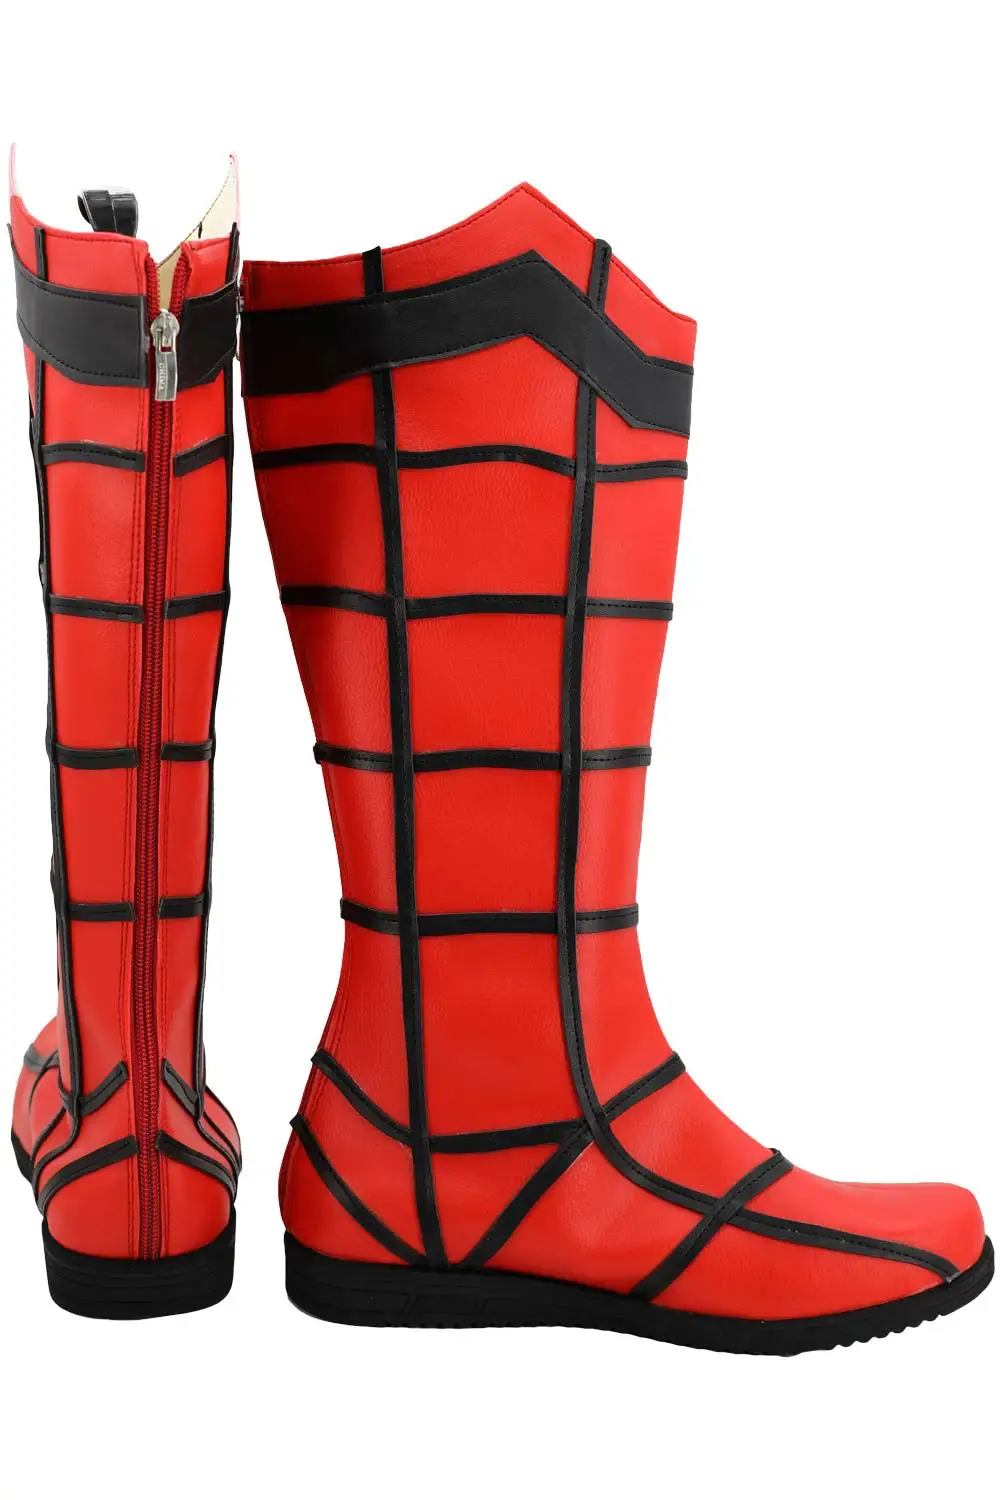 Сапоги Спайдермен, обувь для косплея супергерой паук-человек, косплей, костюм Человека-паука, обувь для взрослых мужчин, европейский размер